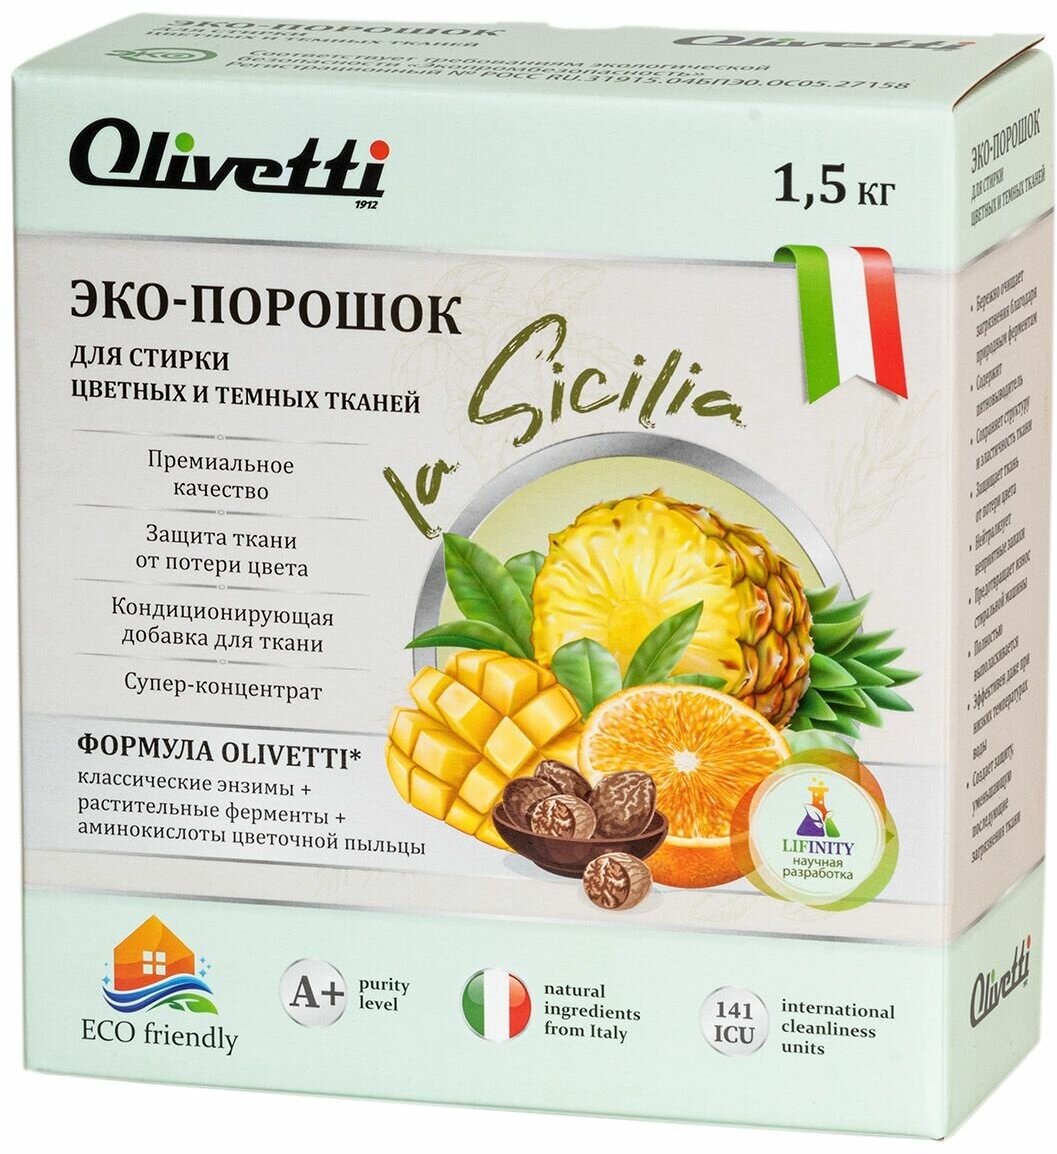 Эко порошок концентрат Olivetti La Sicilia для стирки цветных и темных тканей 15 кг премиум качество натуральные компоненты